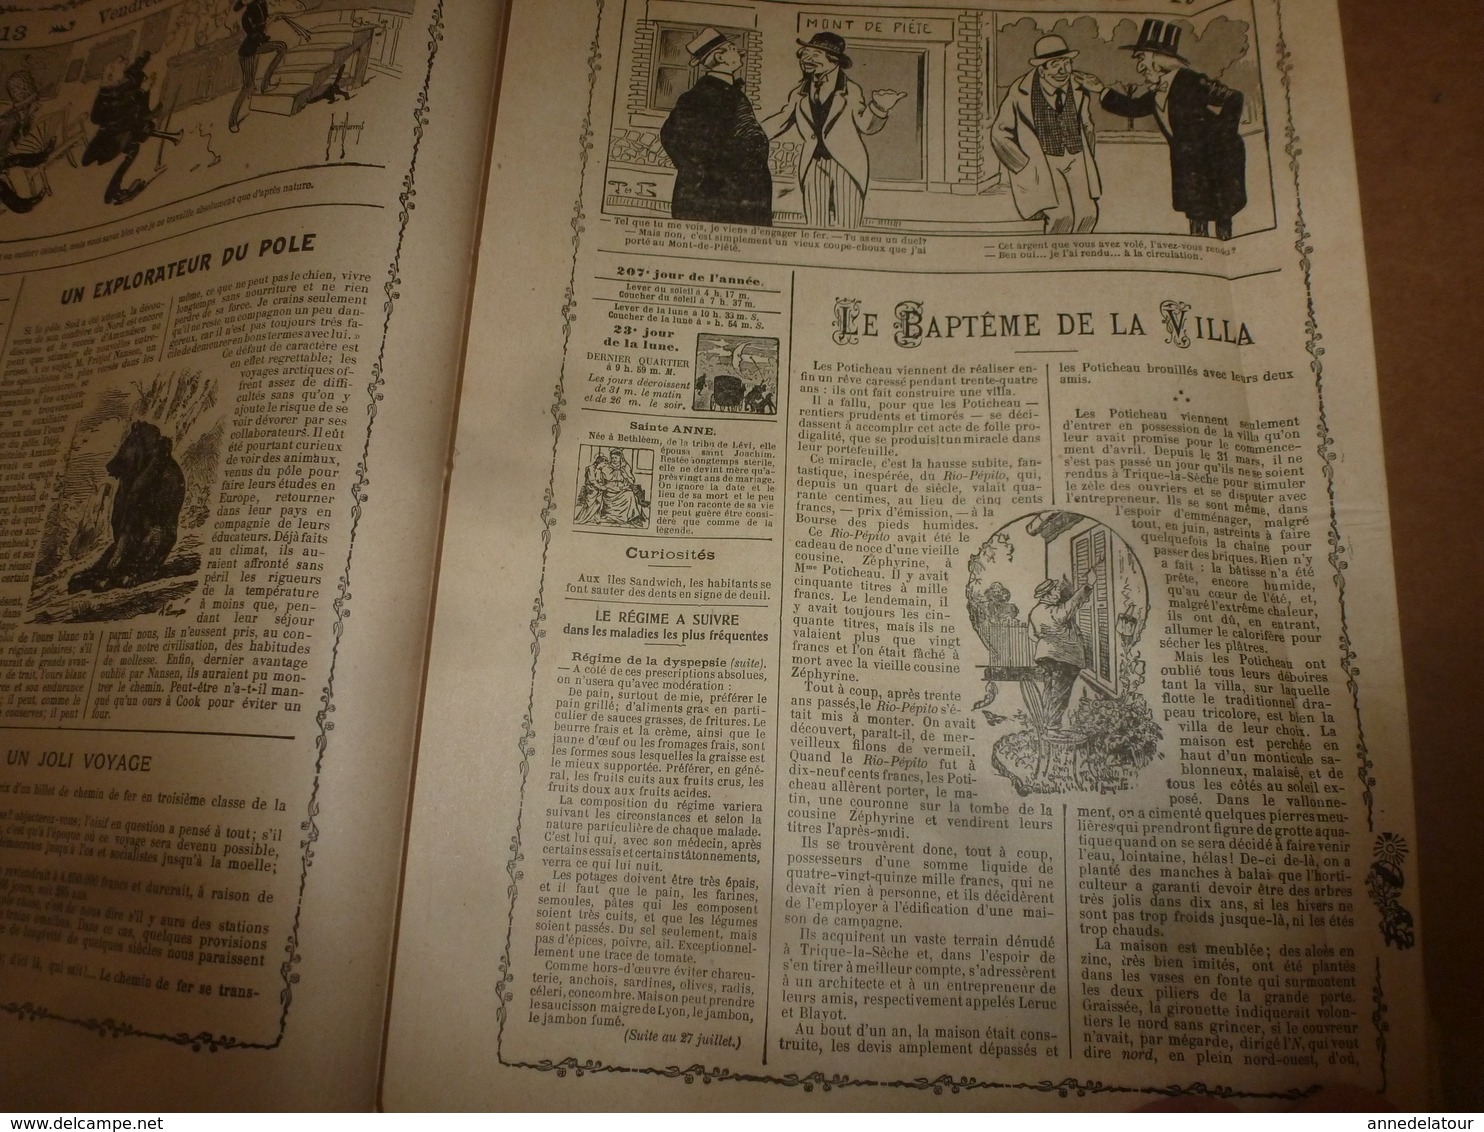 1913 Almanach Vermot :TITANIC ;Le tableau DIABOLIQUE ; ROI du SIAM à BANGKOK;Révolution de la CHINE;Avenir Arctique;etc